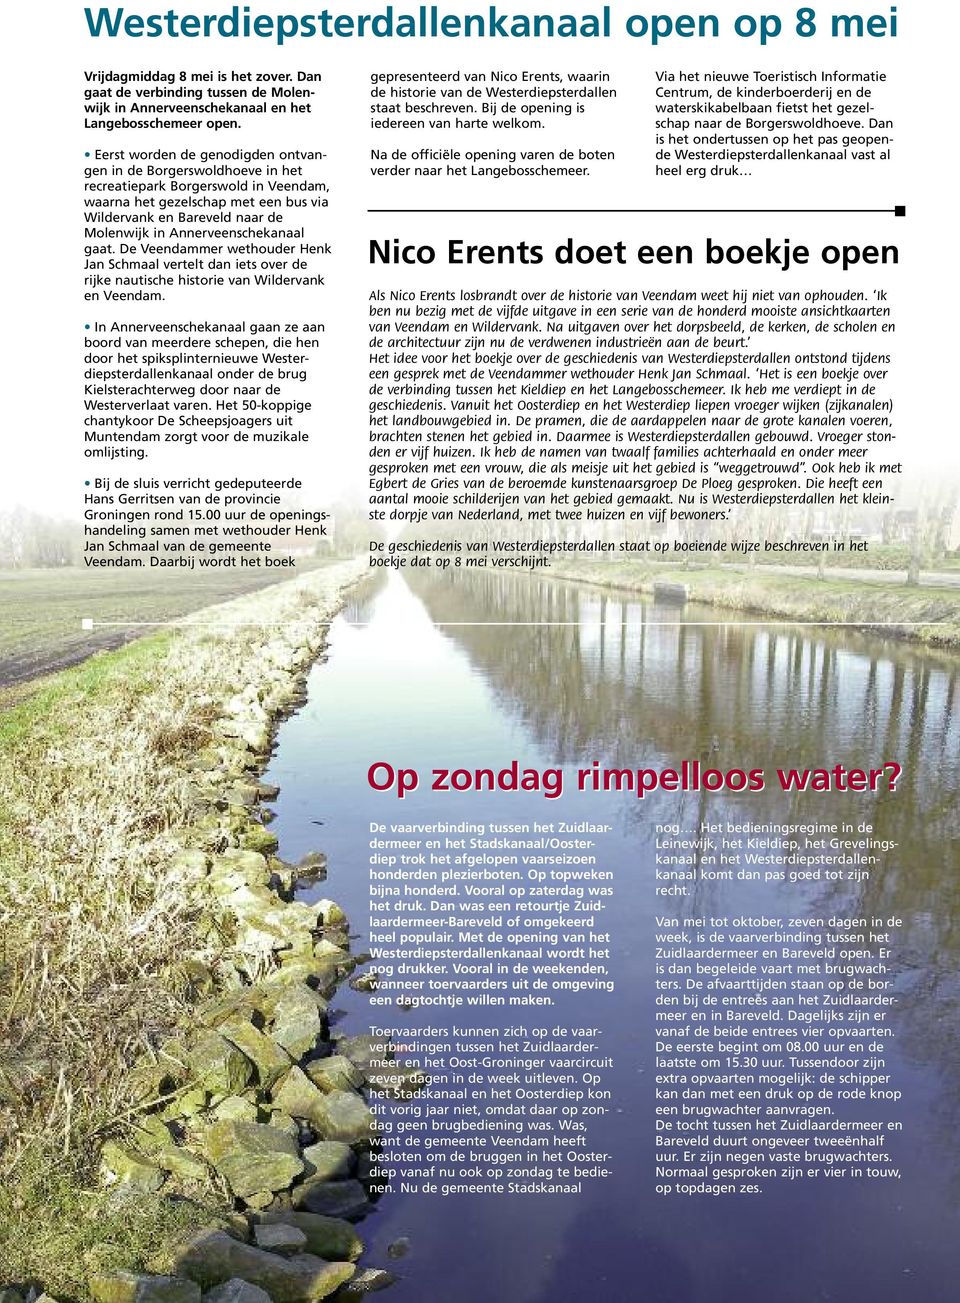 Annerveenschekanaal gaat. De Veendammer wethouder Henk Jan Schmaal vertelt dan iets over de rijke nautische historie van Wildervank en Veendam.